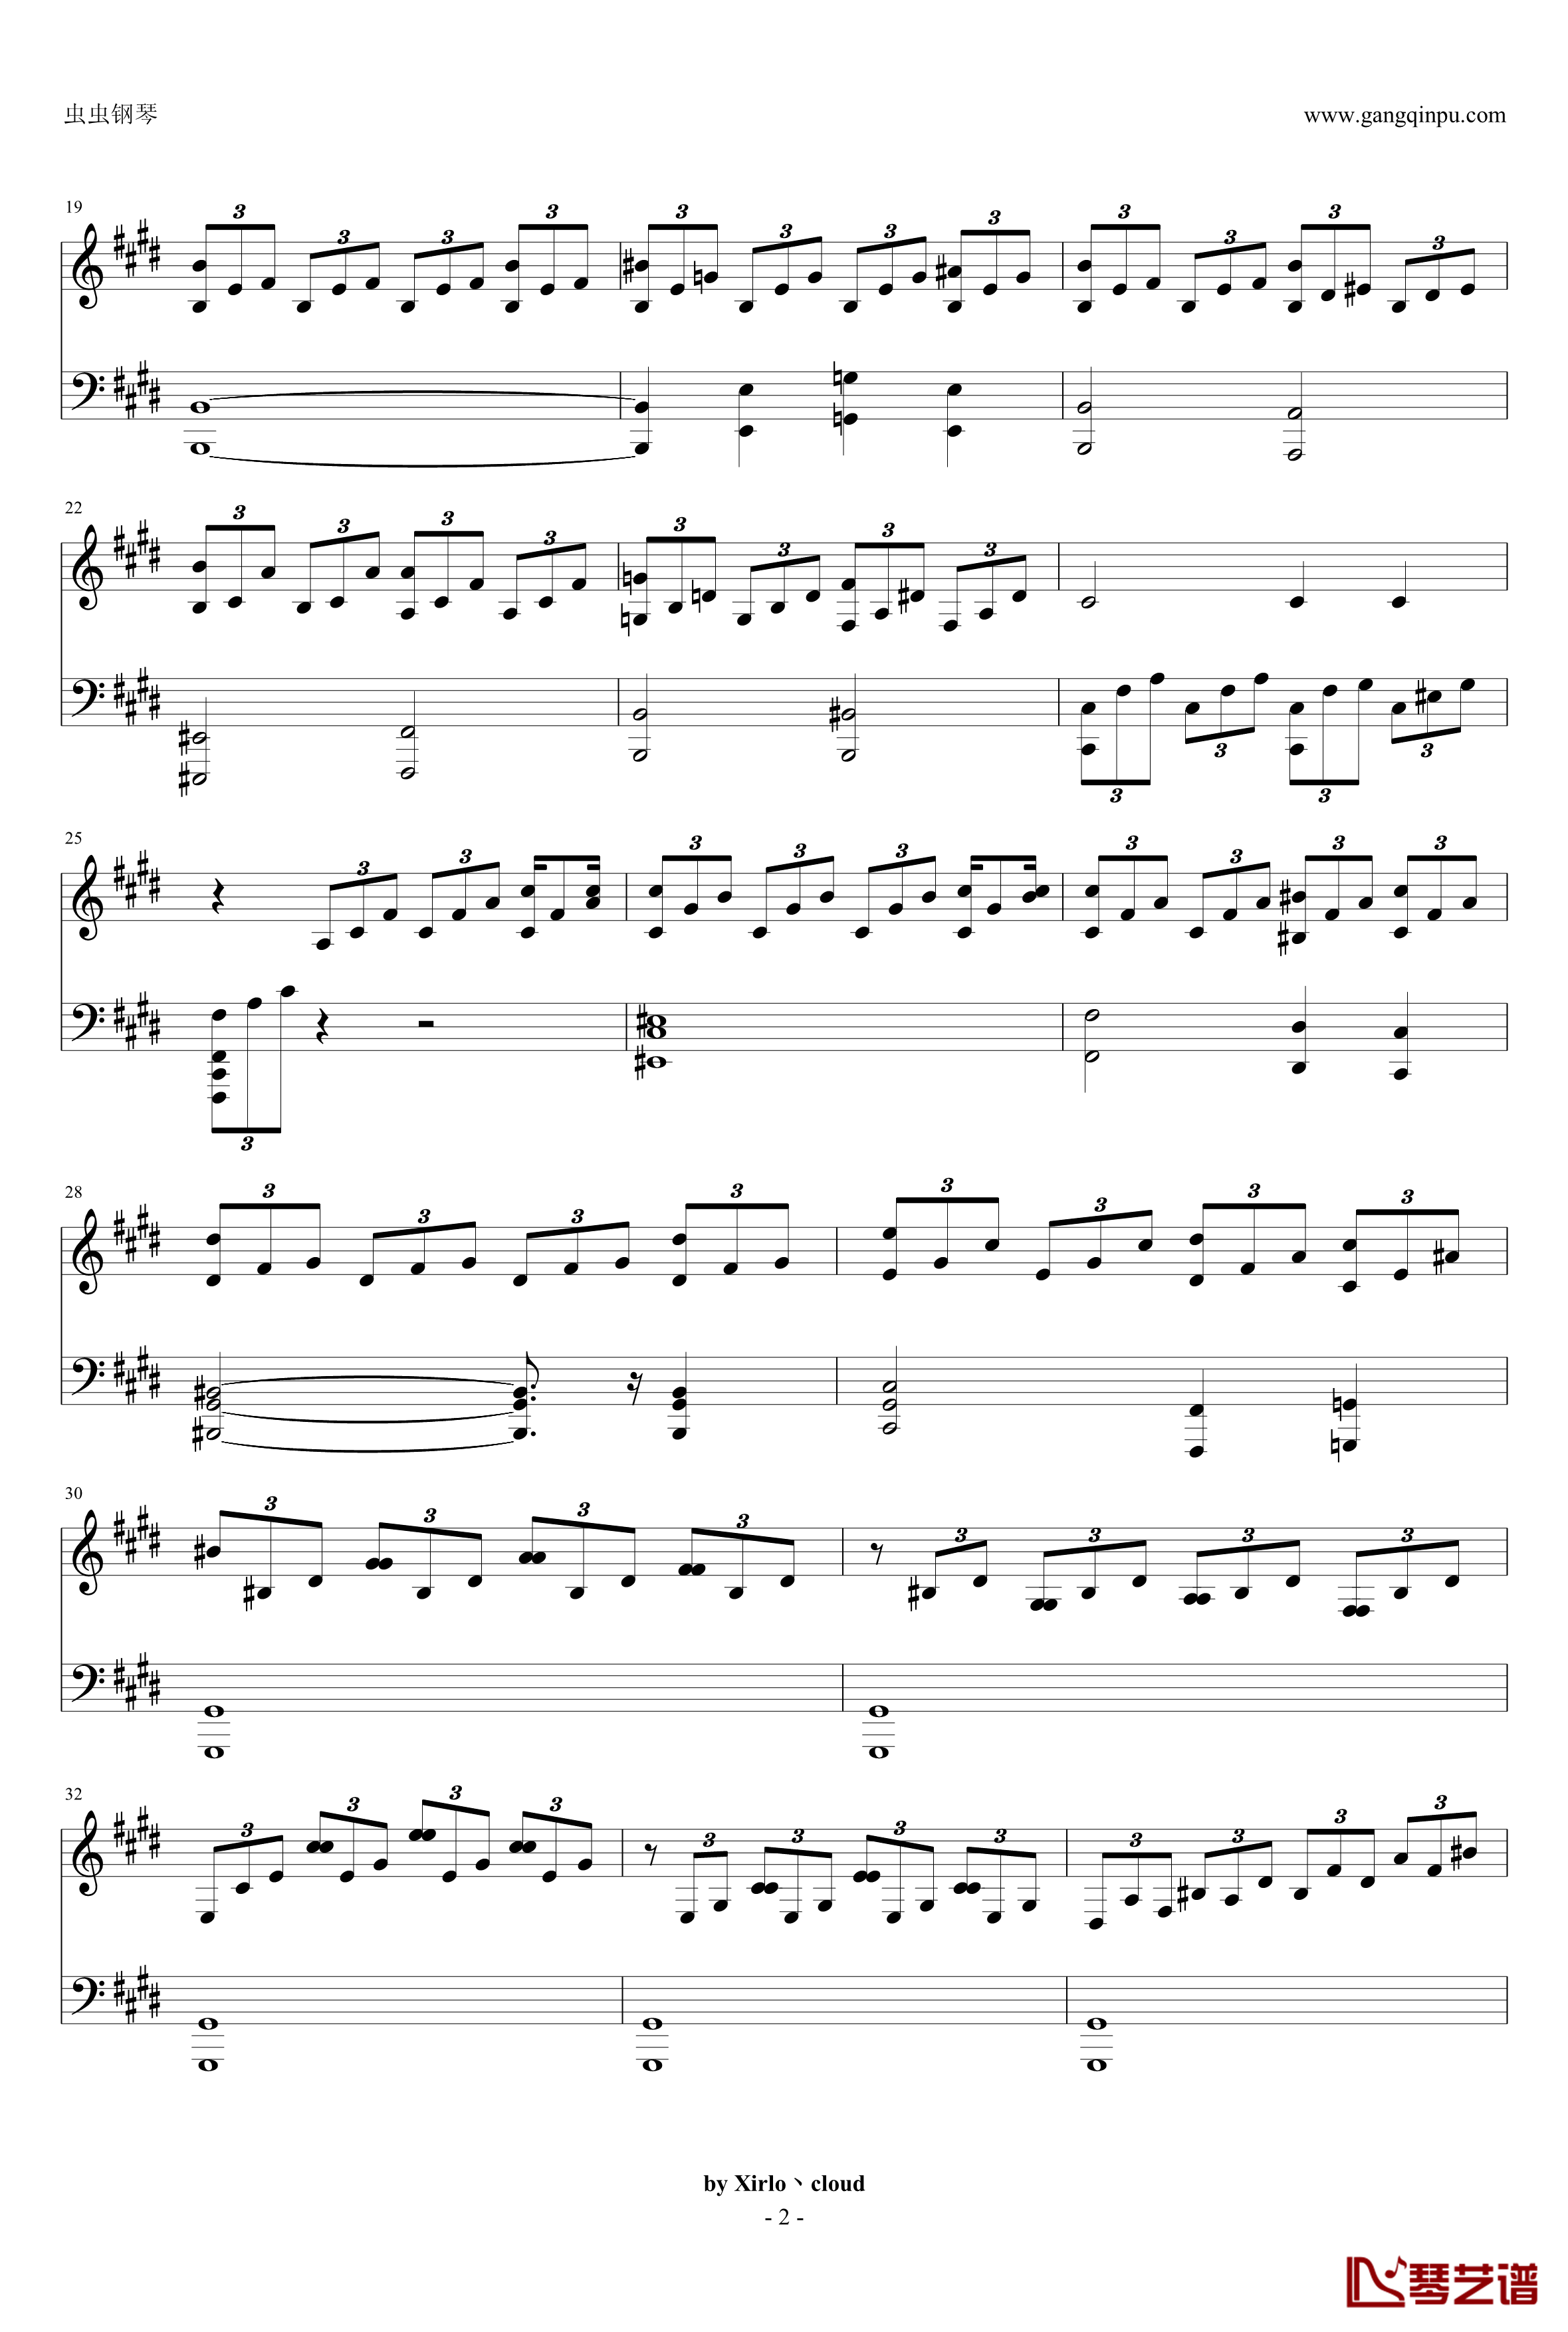 月光奏鸣曲钢琴谱-改编版-贝多芬-beethoven2